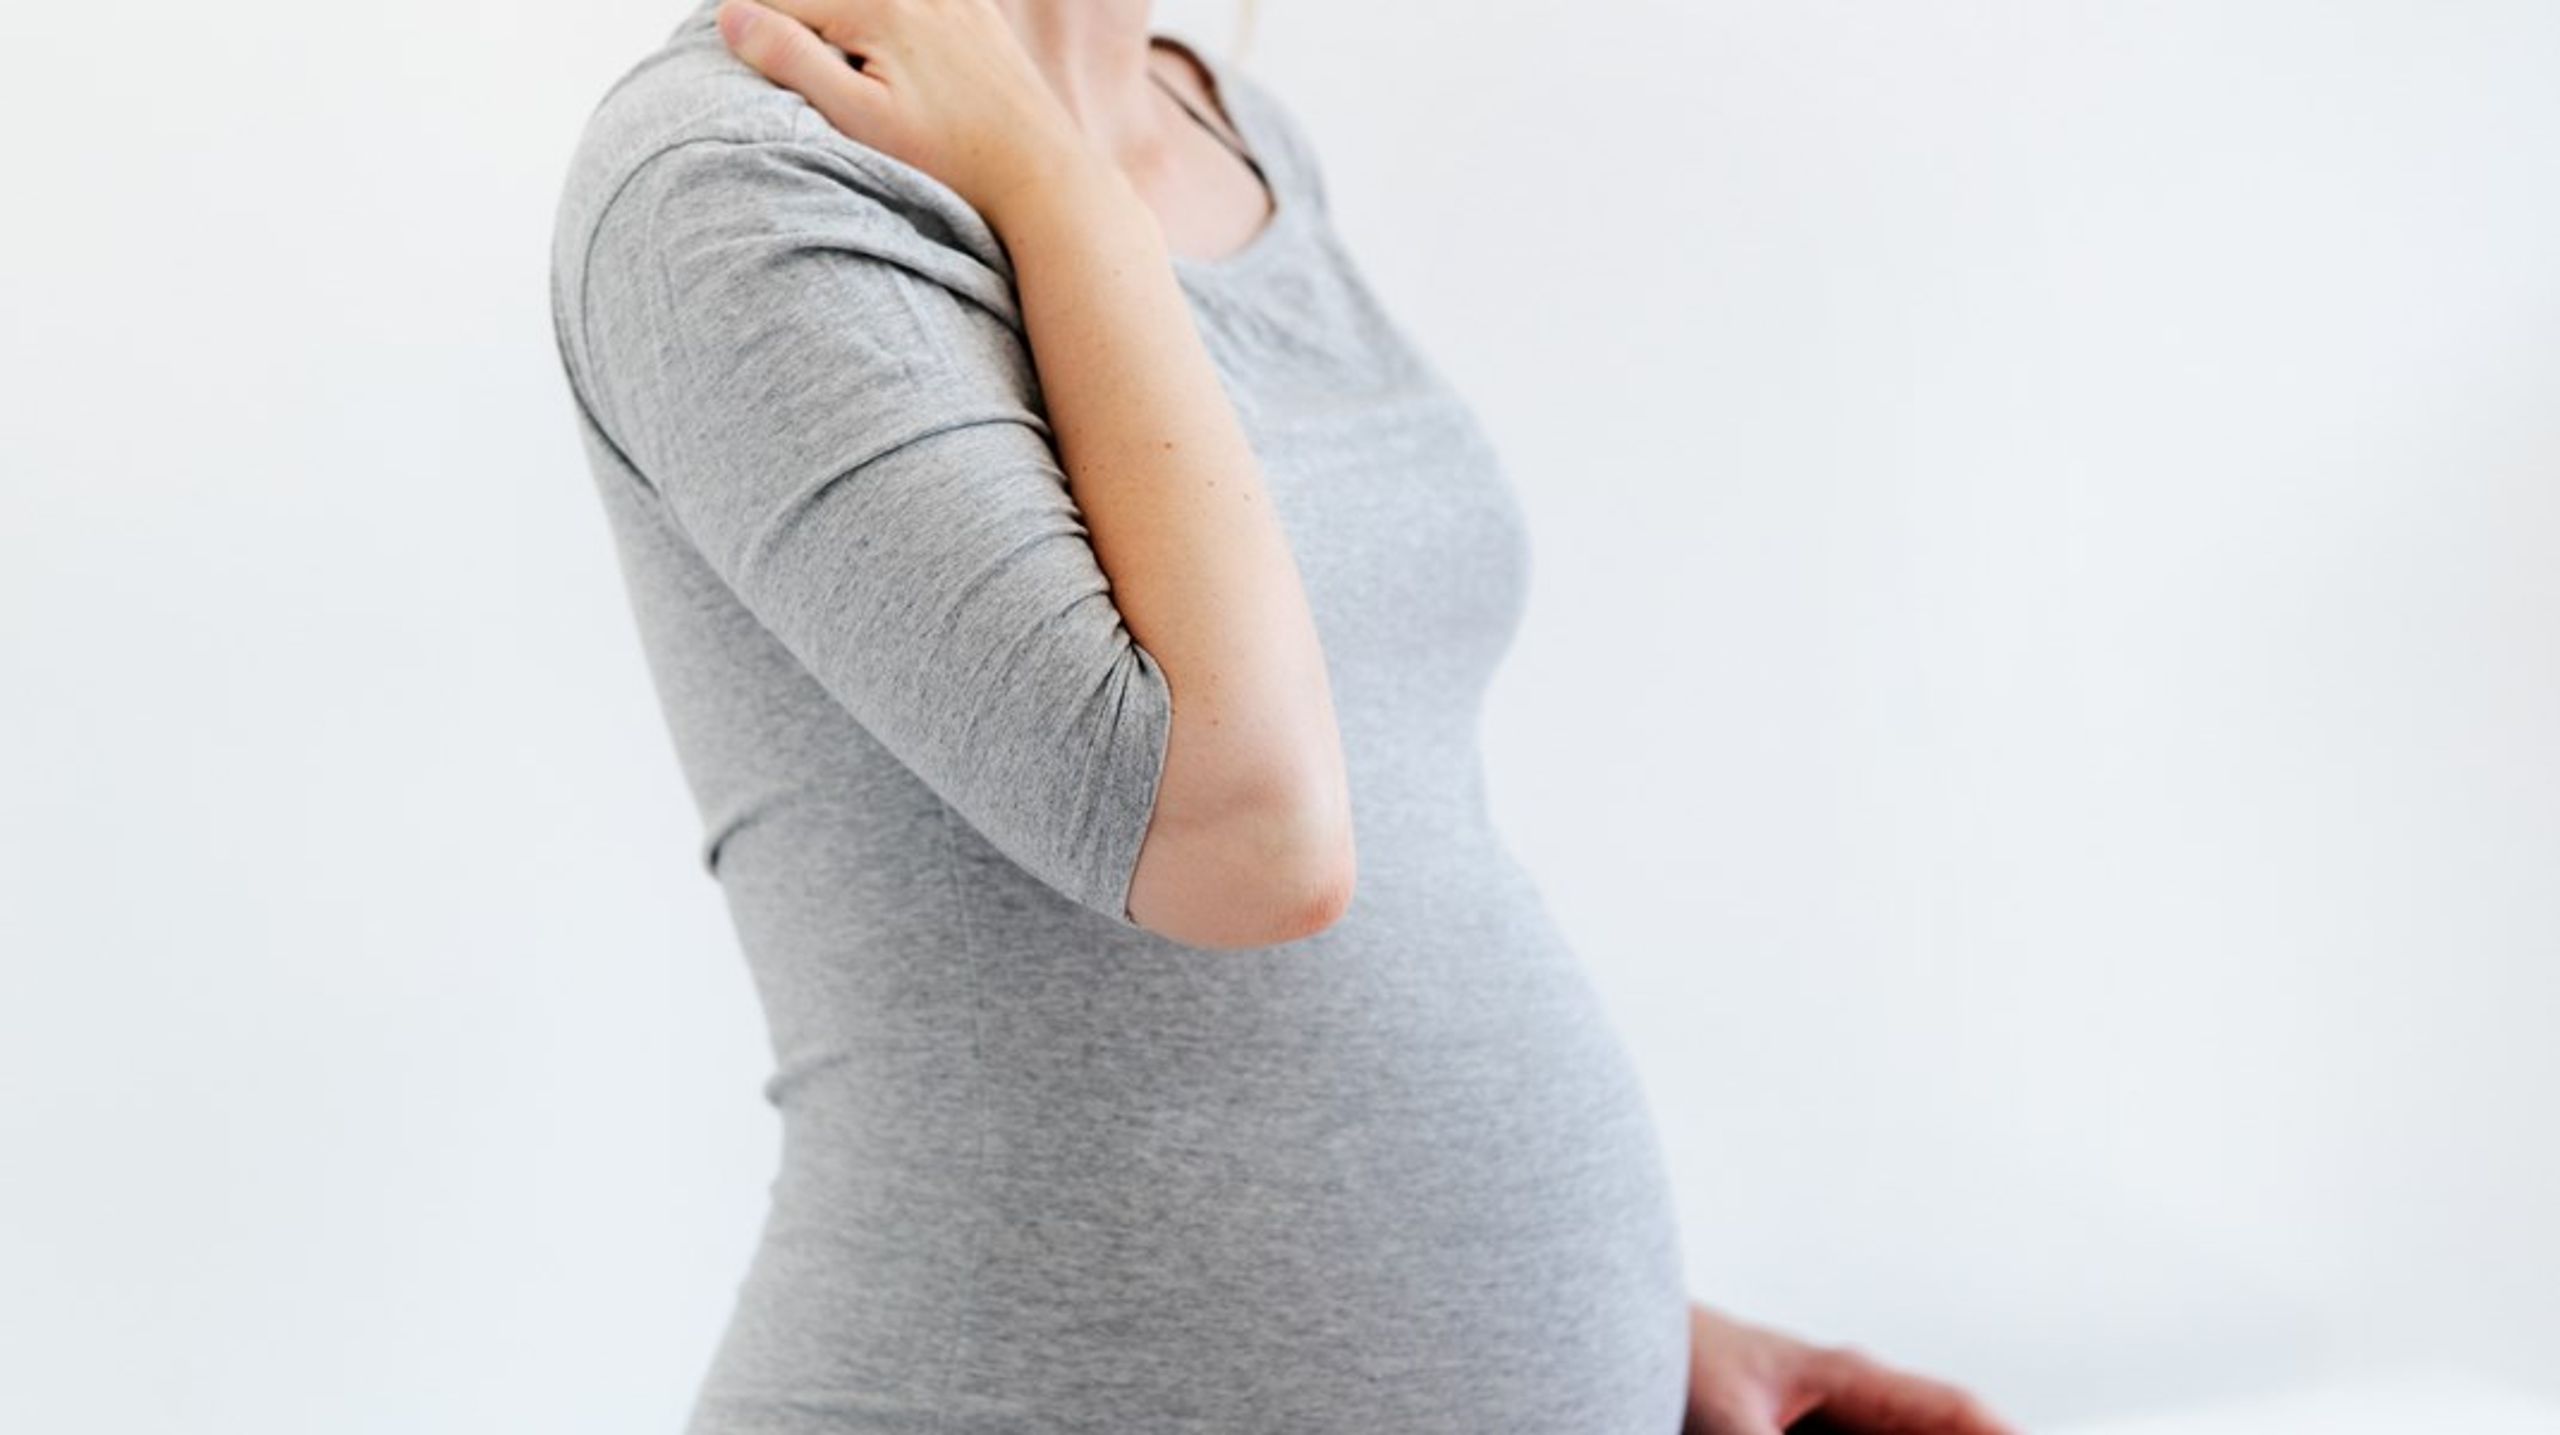 Jordemødre skal kunne følge fødslerne til dørs og sikre, at familiedannelsen sker under trygge forhold, skriver Karoline Vind (SF).